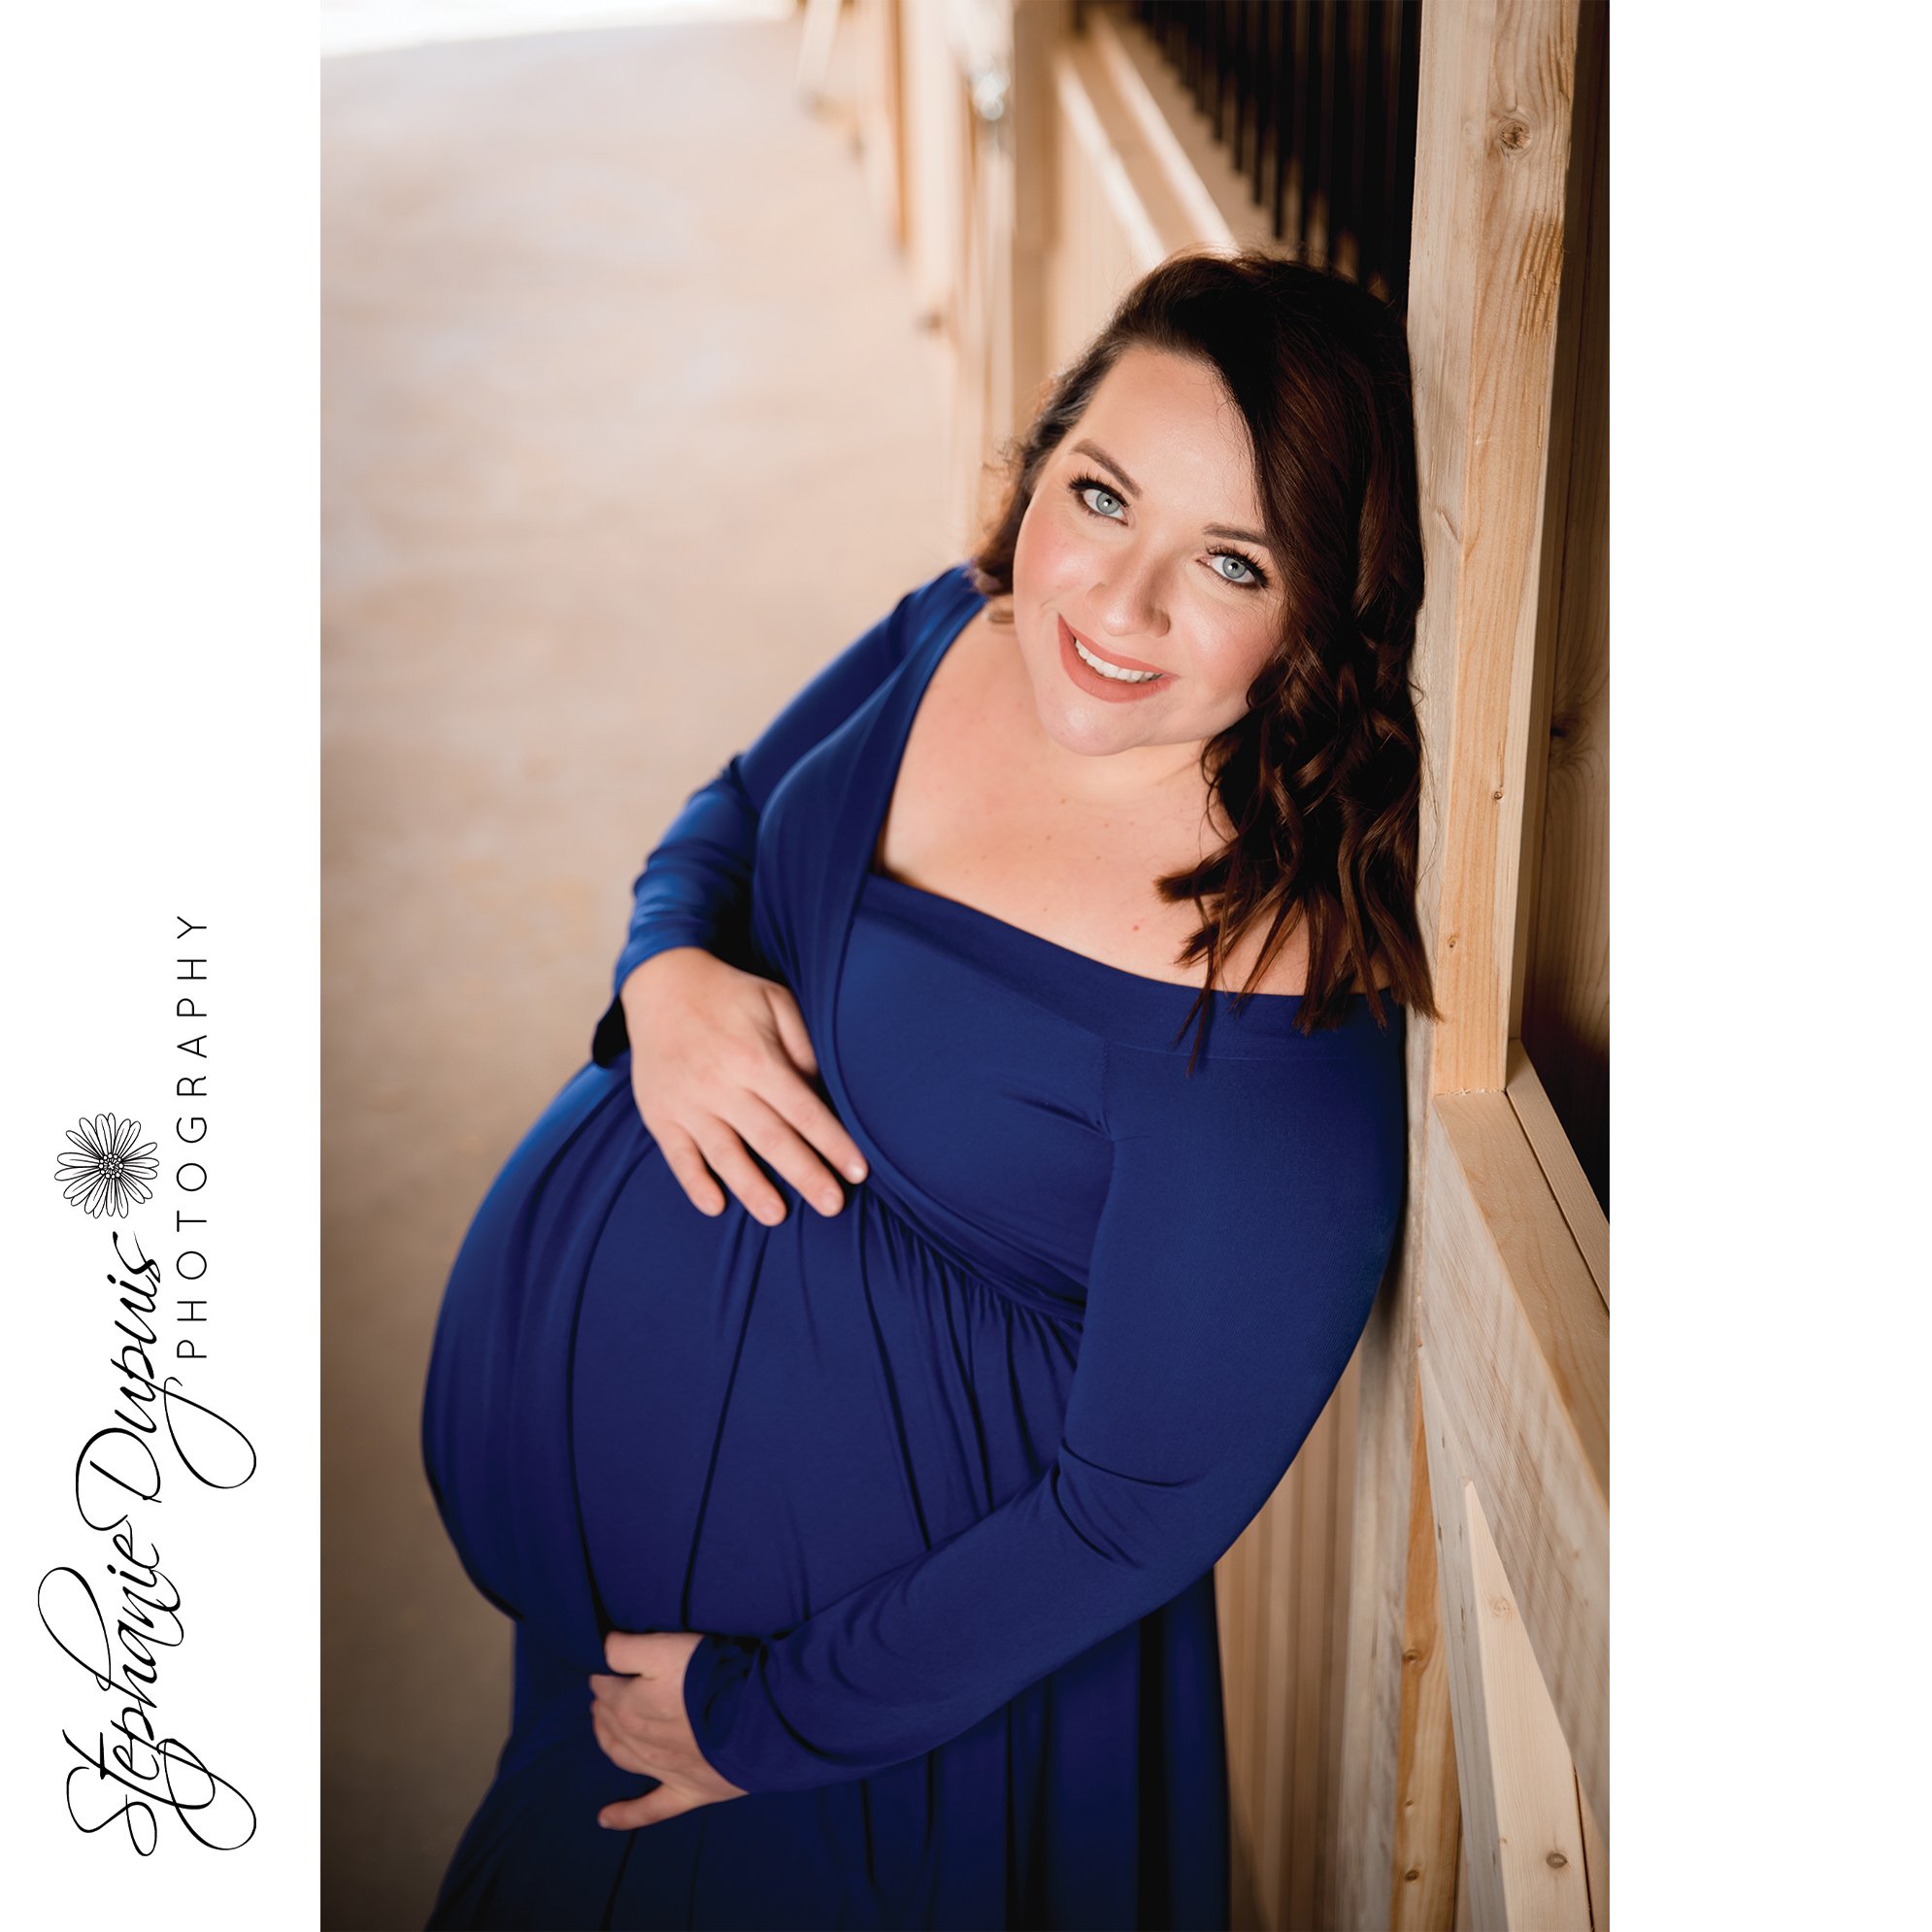 Jessica Maternity 1006 - Portfolio: Jessica - Maternity Session